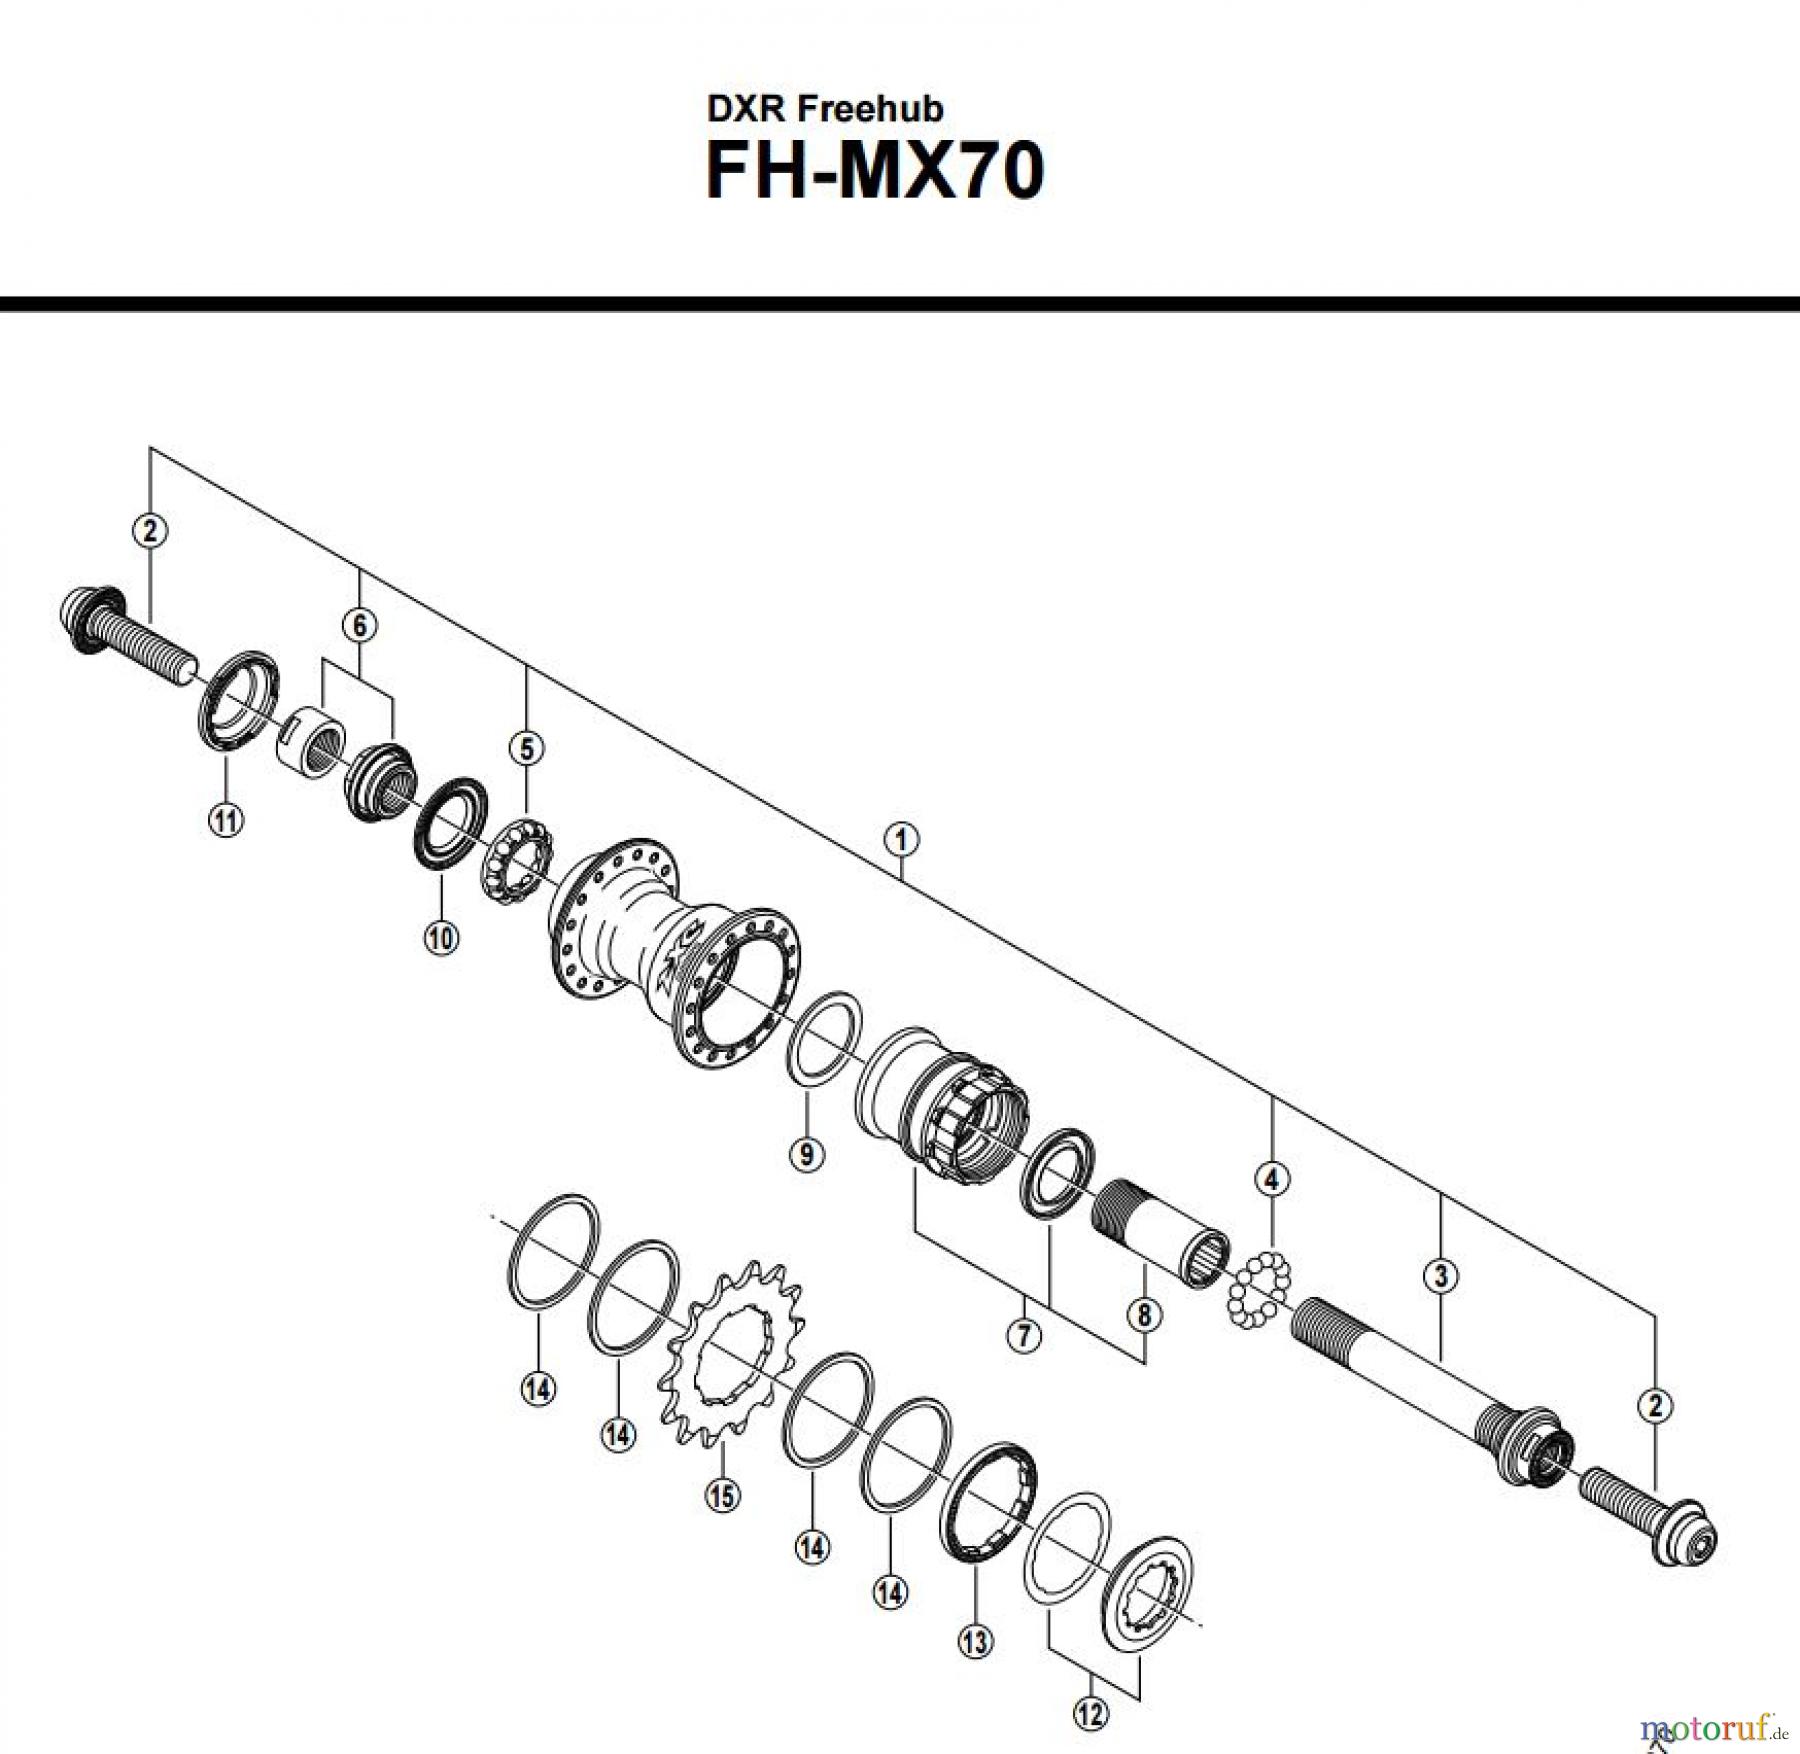  Shimano FH Free Hub - Freilaufnabe FH-MX70 -2658